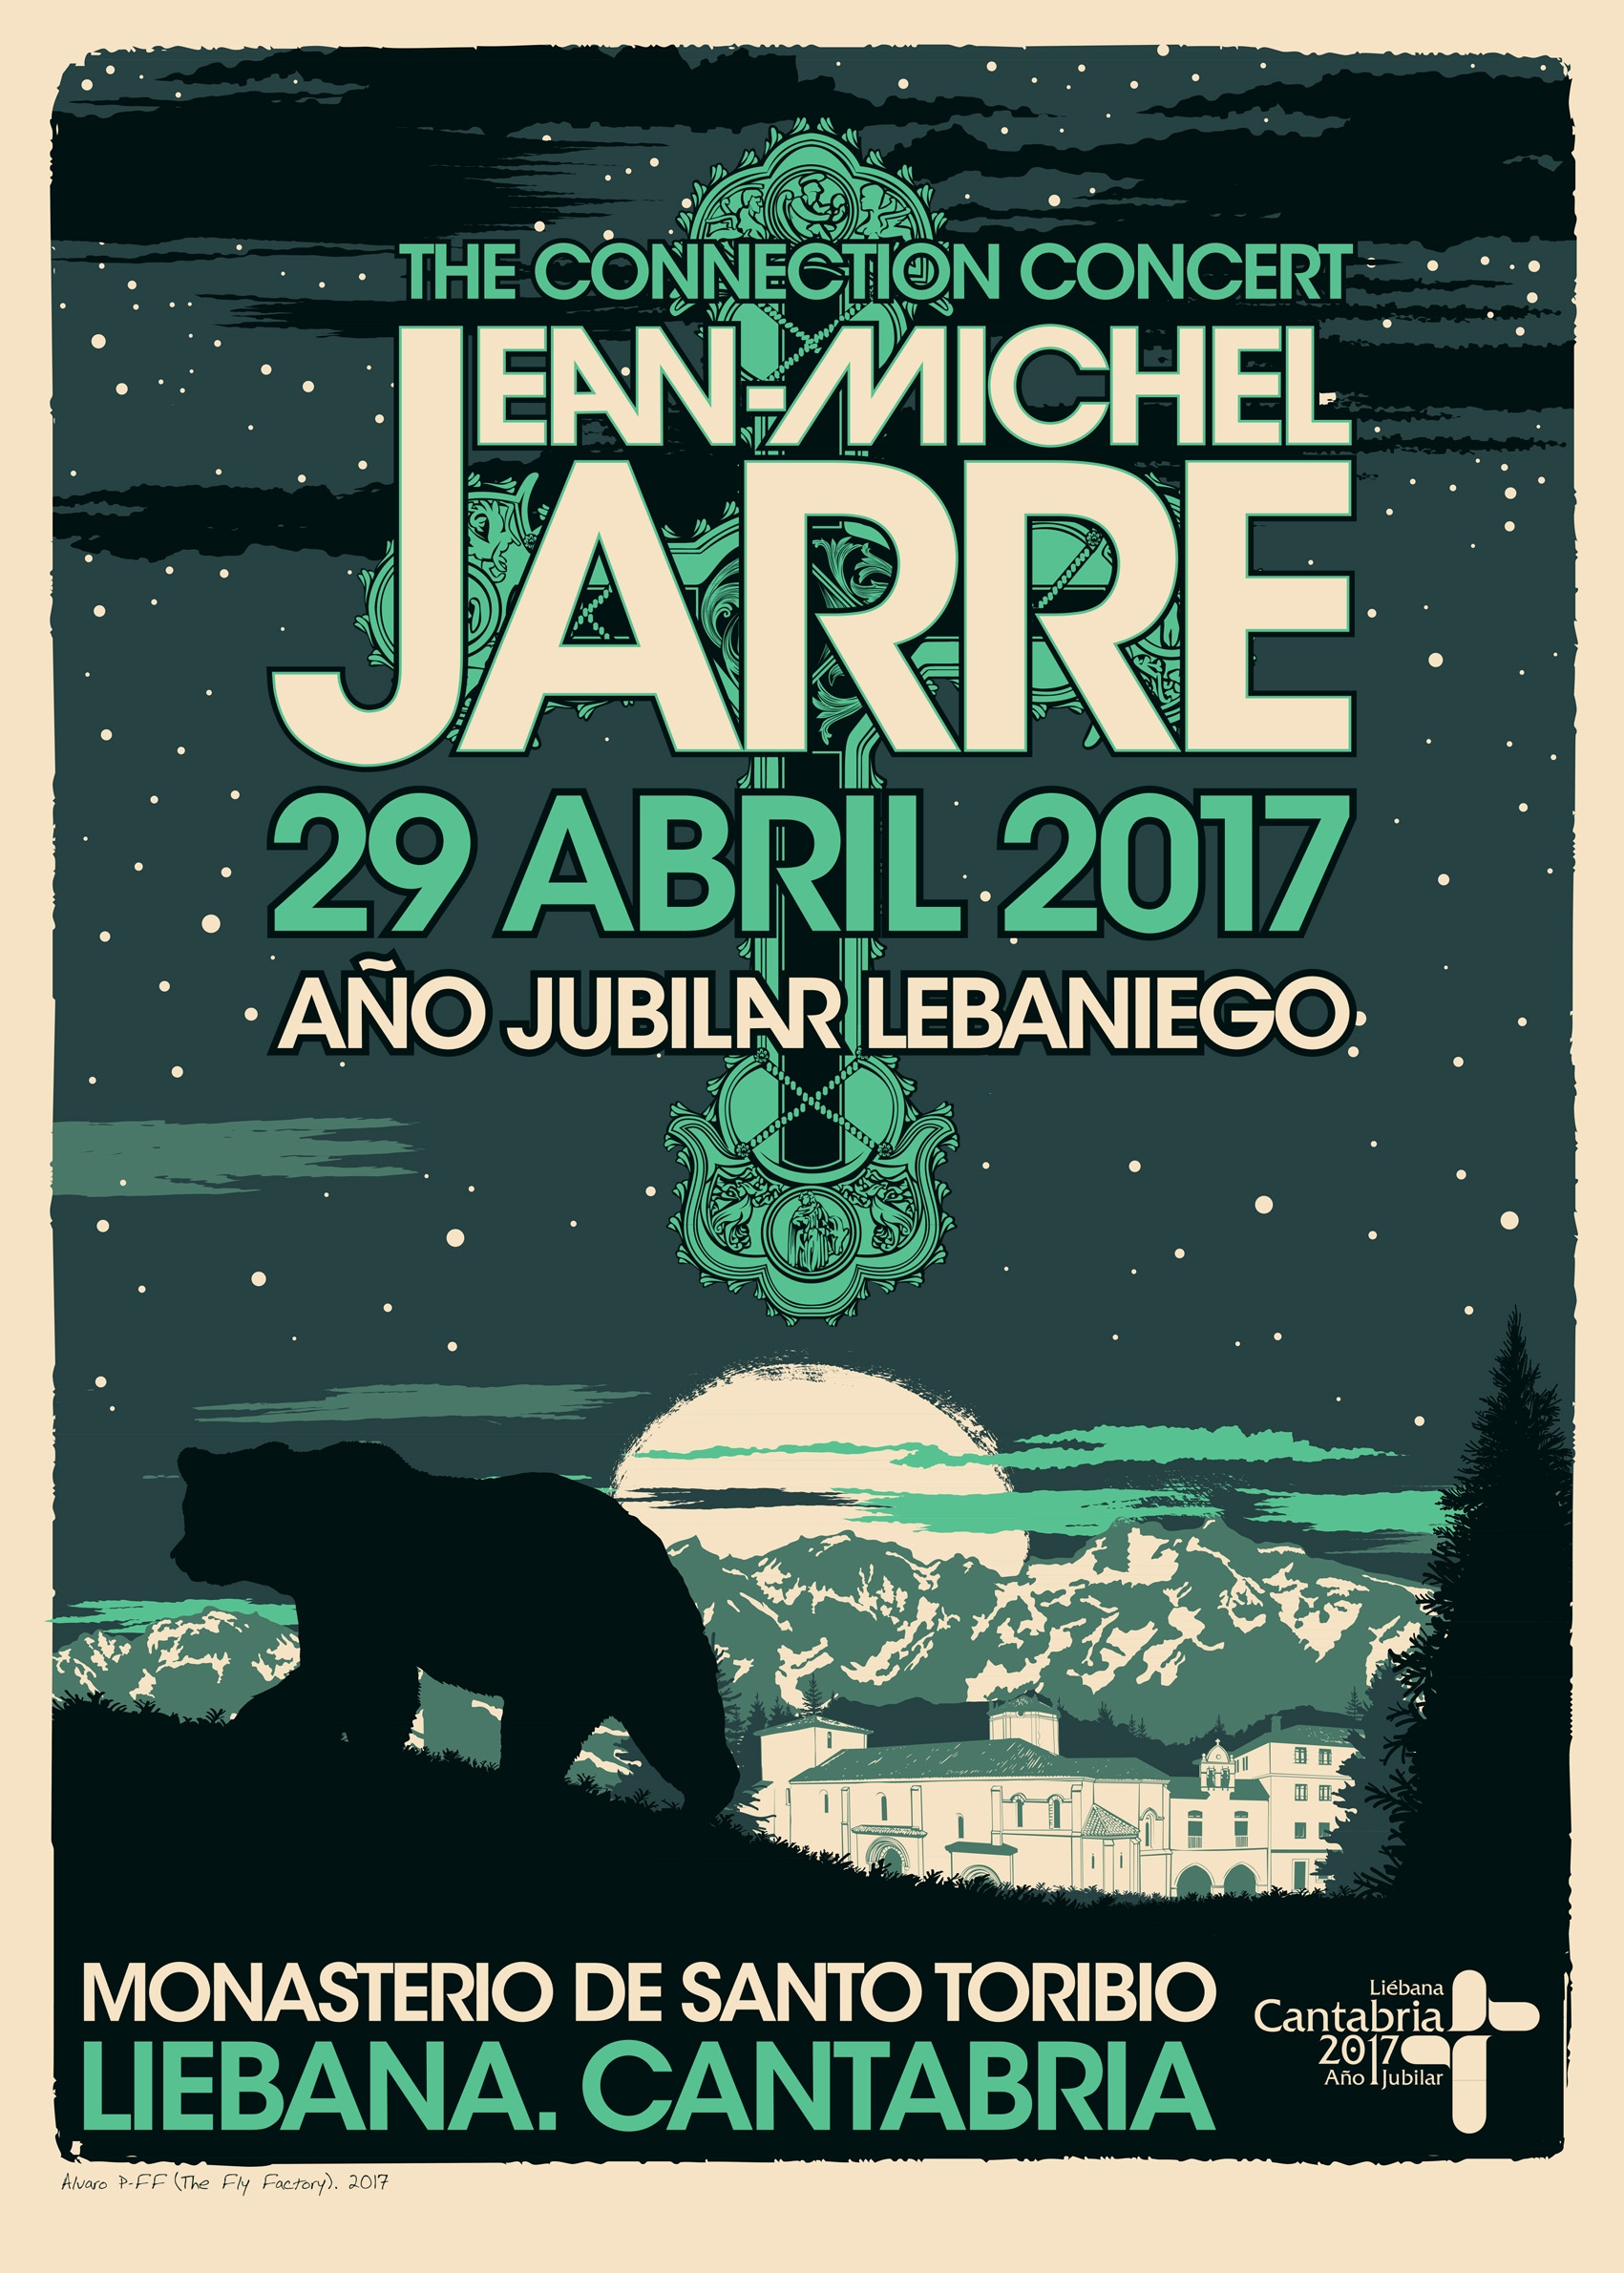  La 2 ofrece en directo el concierto de Jean Michel Jarre desde Santo Toribio